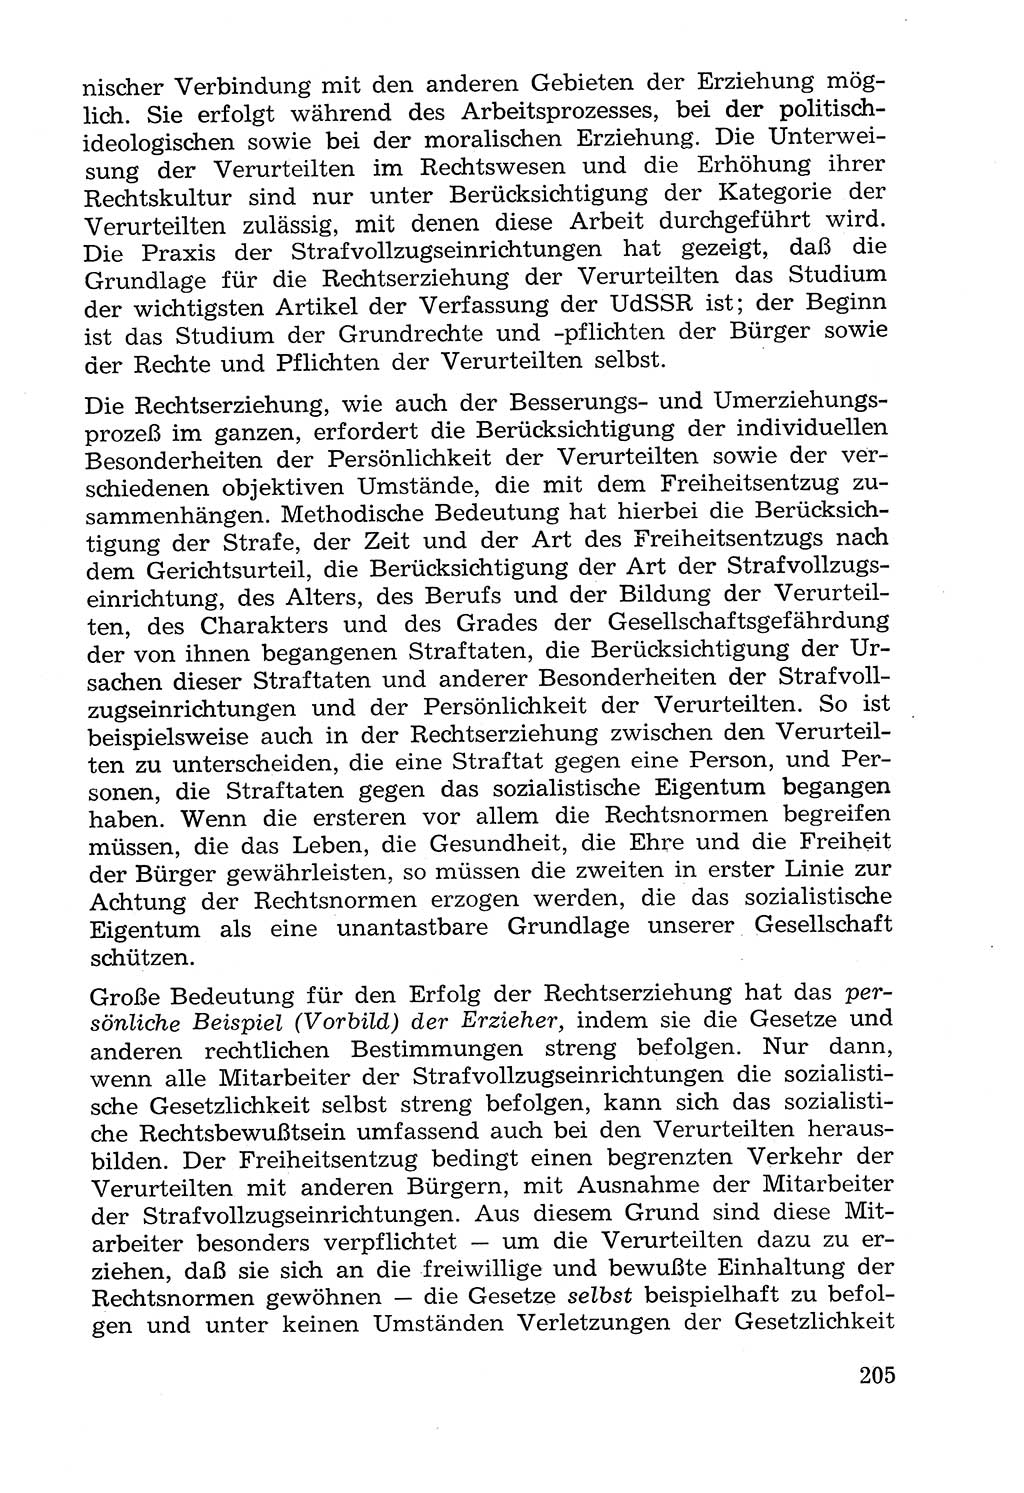 Lehrbuch der Strafvollzugspädagogik [Deutsche Demokratische Republik (DDR)] 1969, Seite 205 (Lb. SV-Pd. DDR 1969, S. 205)